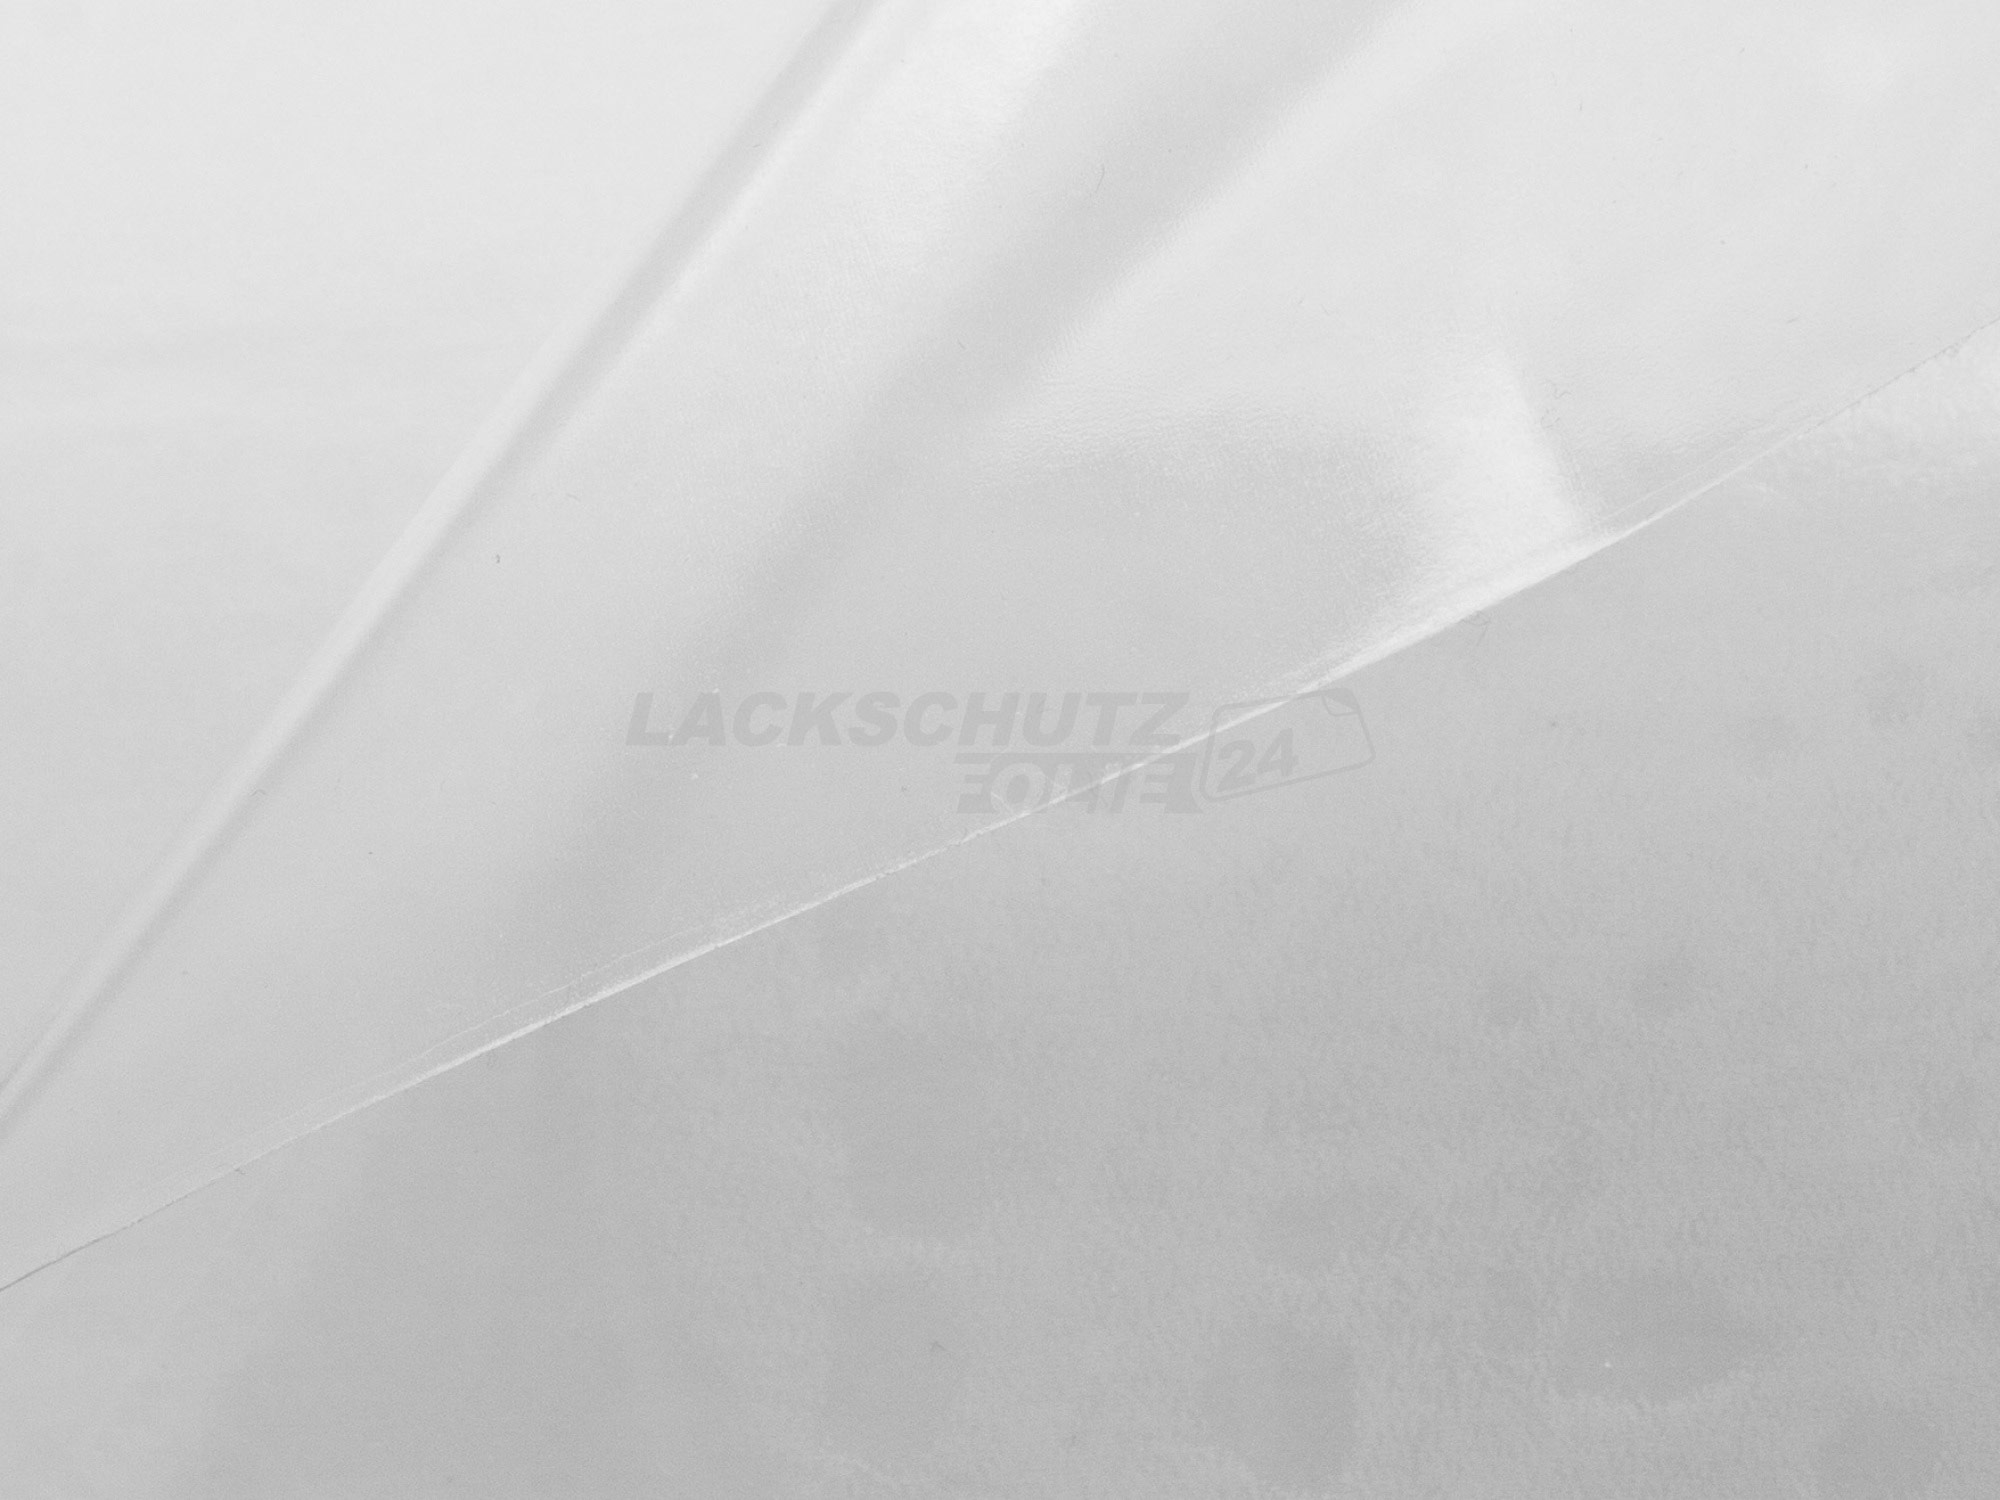 Ladekantenschutzfolie - Transparent Glatt Hochglänzend 150 µm stark für Mercedes-Benz C-Klasse Limousine Typ W204, BJ 2007-2013